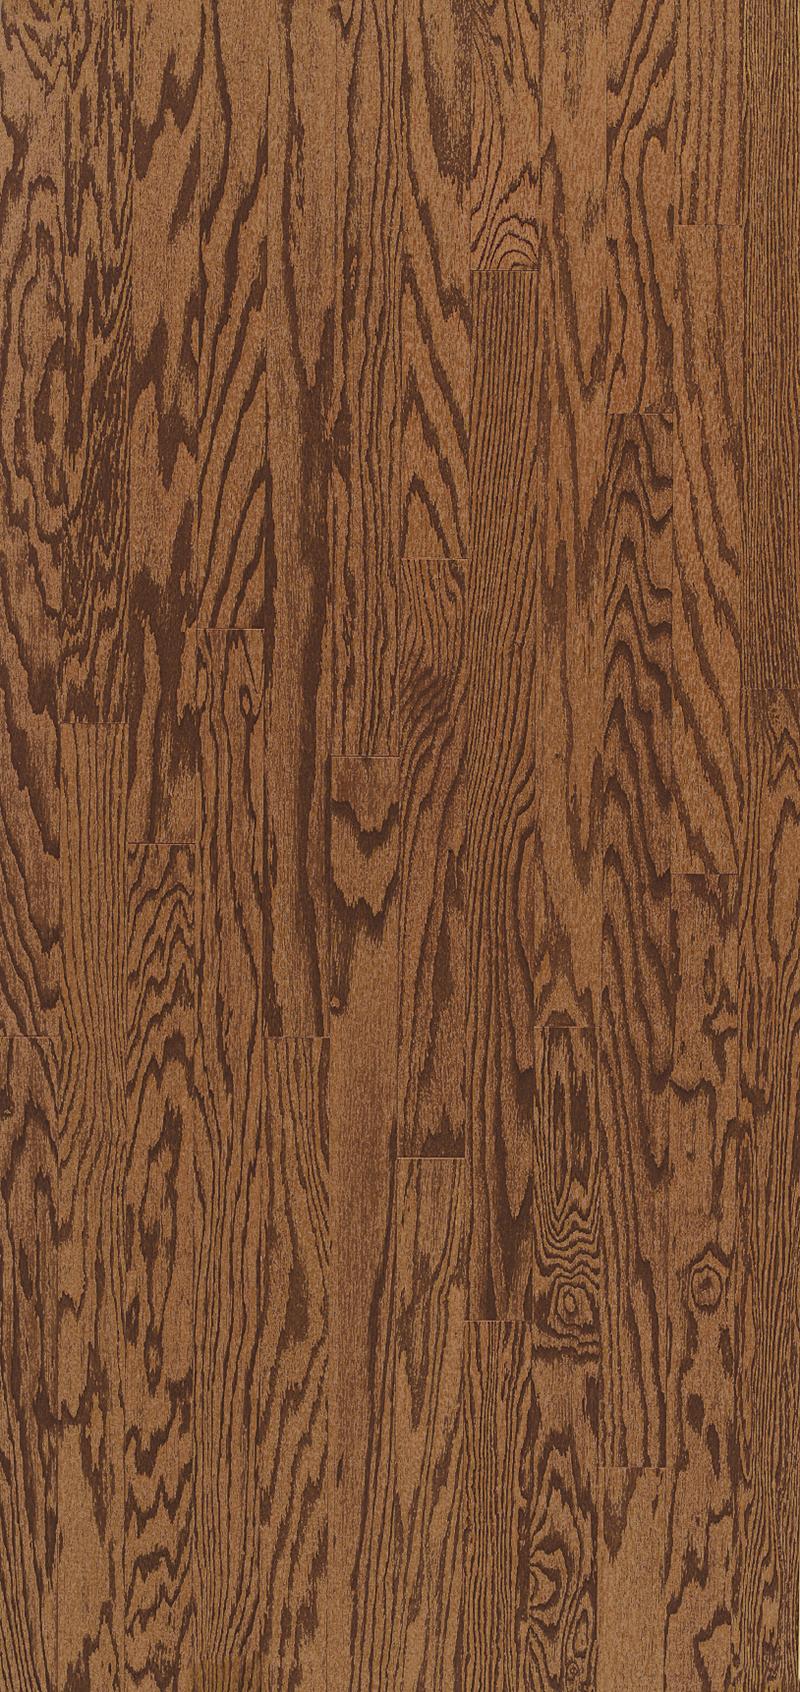 Saddle Oak 5" - Turlington Lock&Fold Collection - Engineered Hardwood Flooring by Bruce - Hardwood by Bruce Hardwood